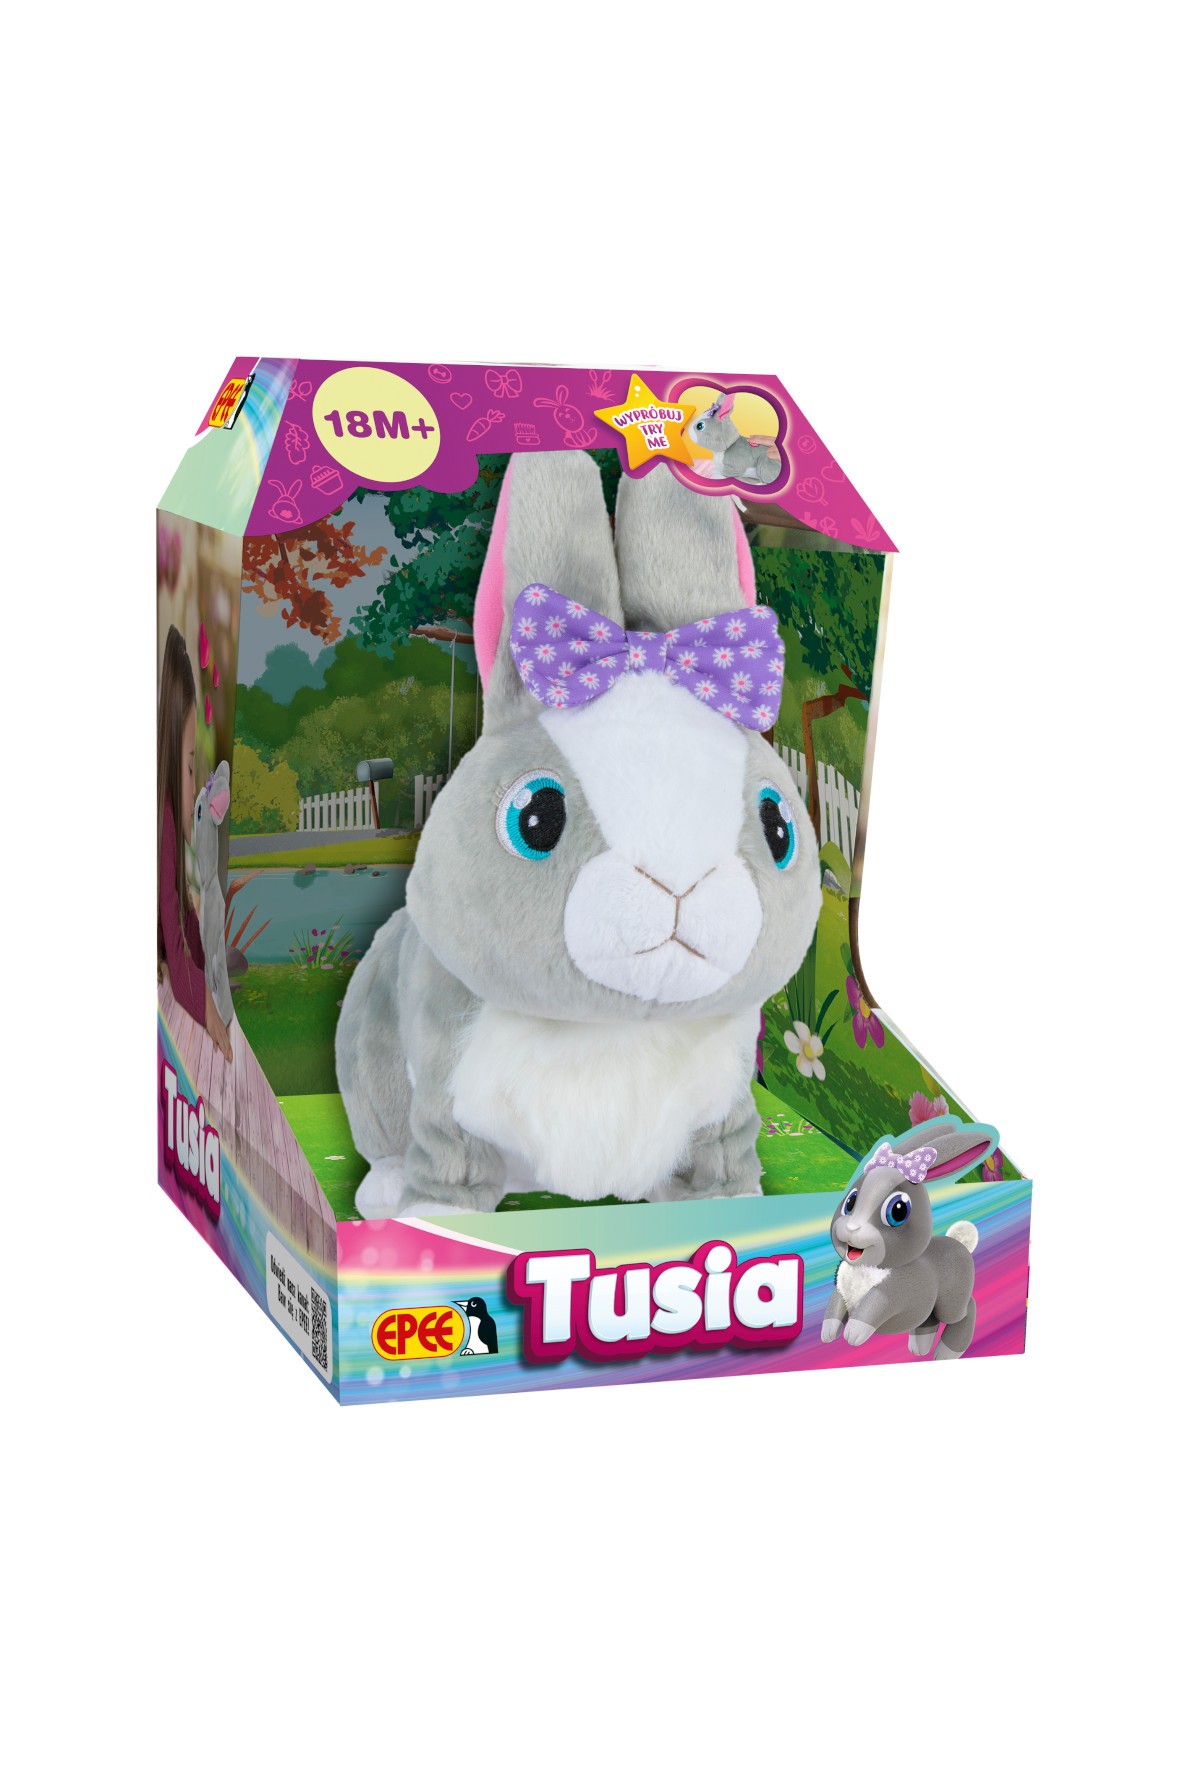 Tusia - królik interaktywny wiek 18msc+